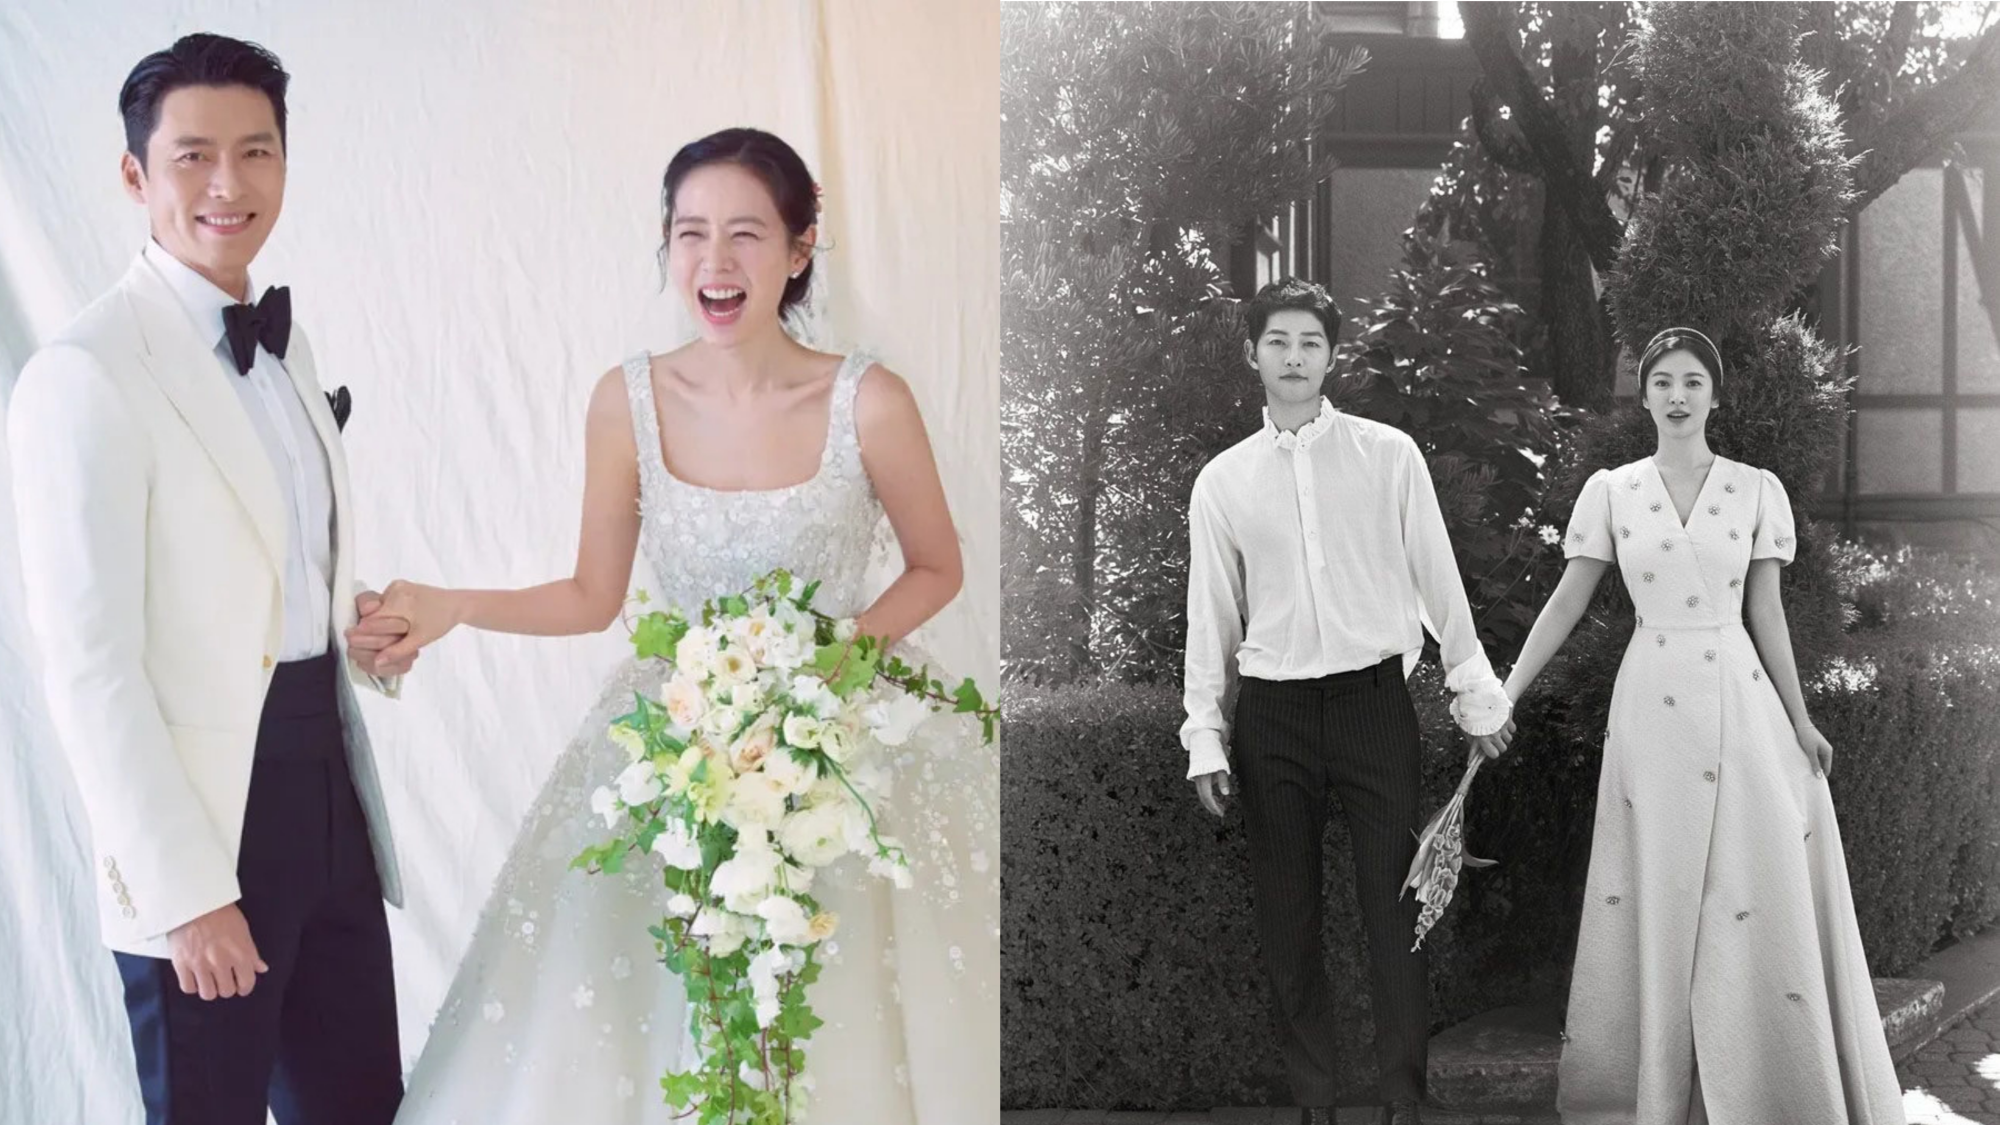 Siêu đám cưới của cặp đôi Hyun Bin - Son Ye Jin vẫn chưa thể vượt qua đám cưới thế kỷ của Song - Song ở điểm này! - Ảnh 4